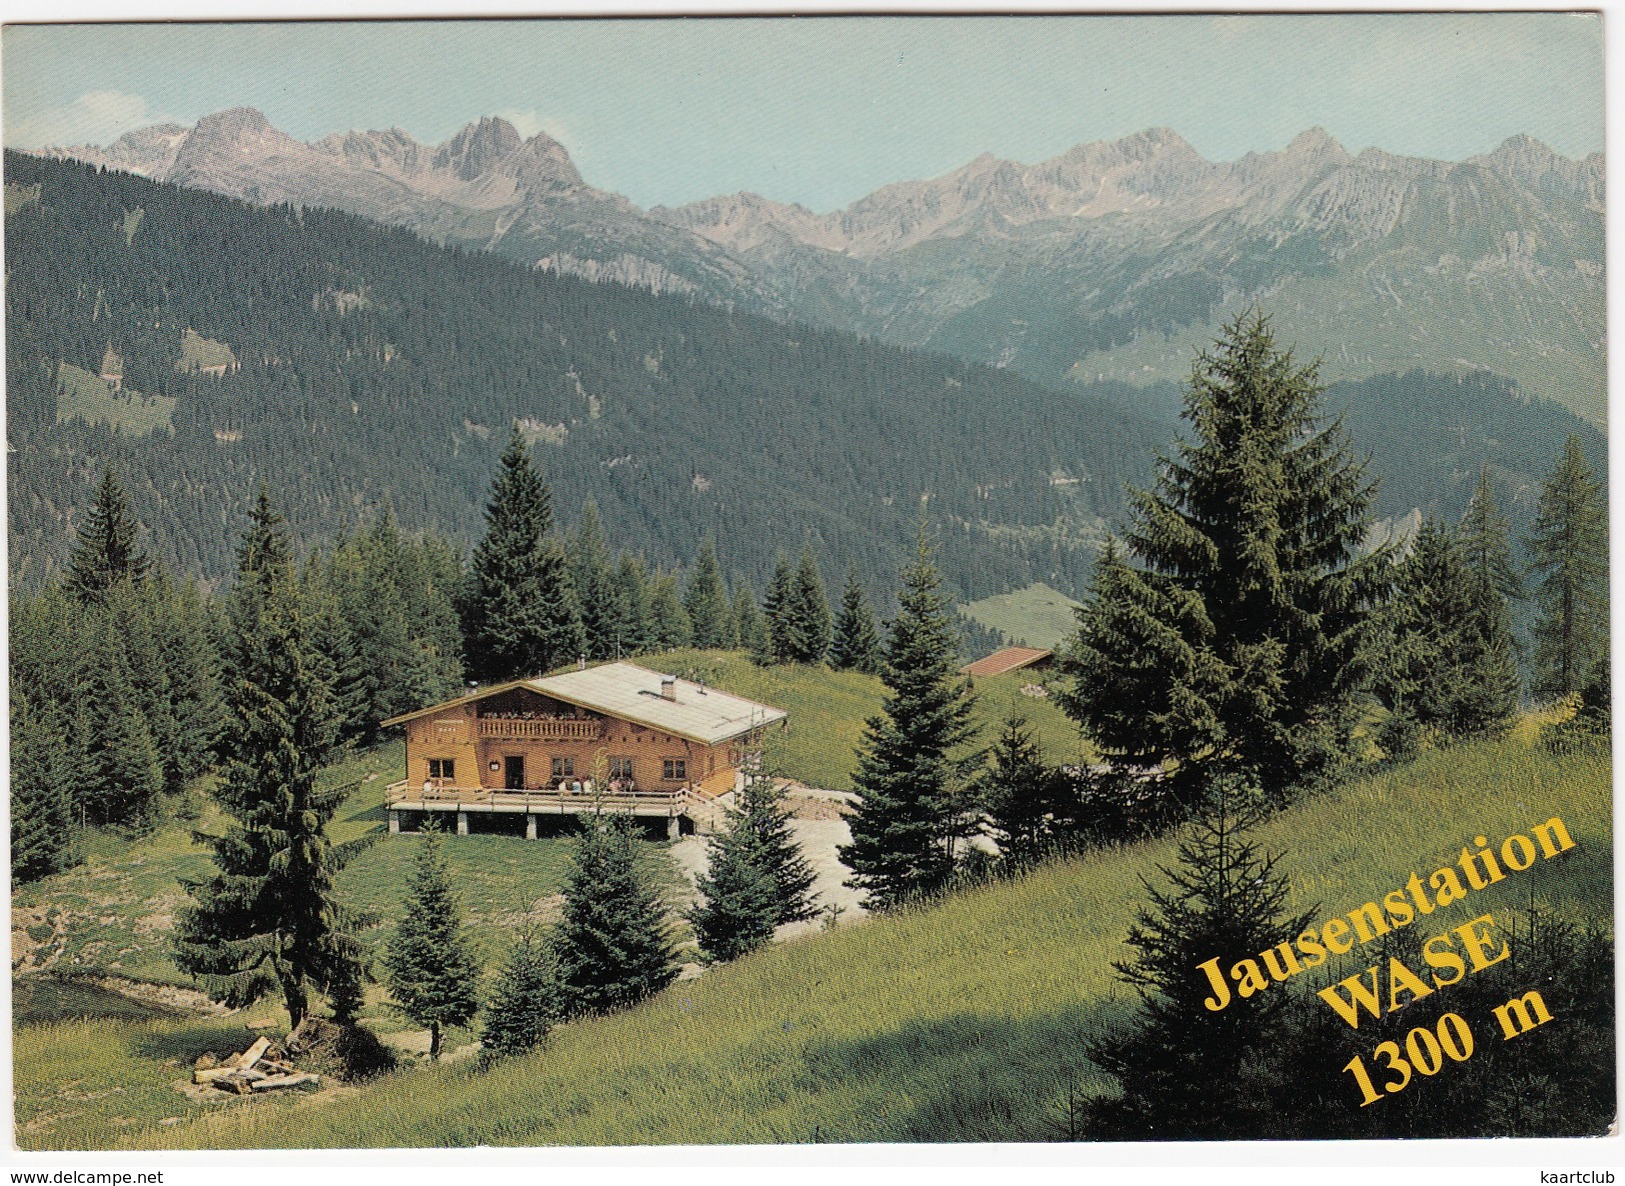 Bach/Lechtal: Jausenstation Wase - 1300 M -  (Tirol, - Austria) - Lechtal